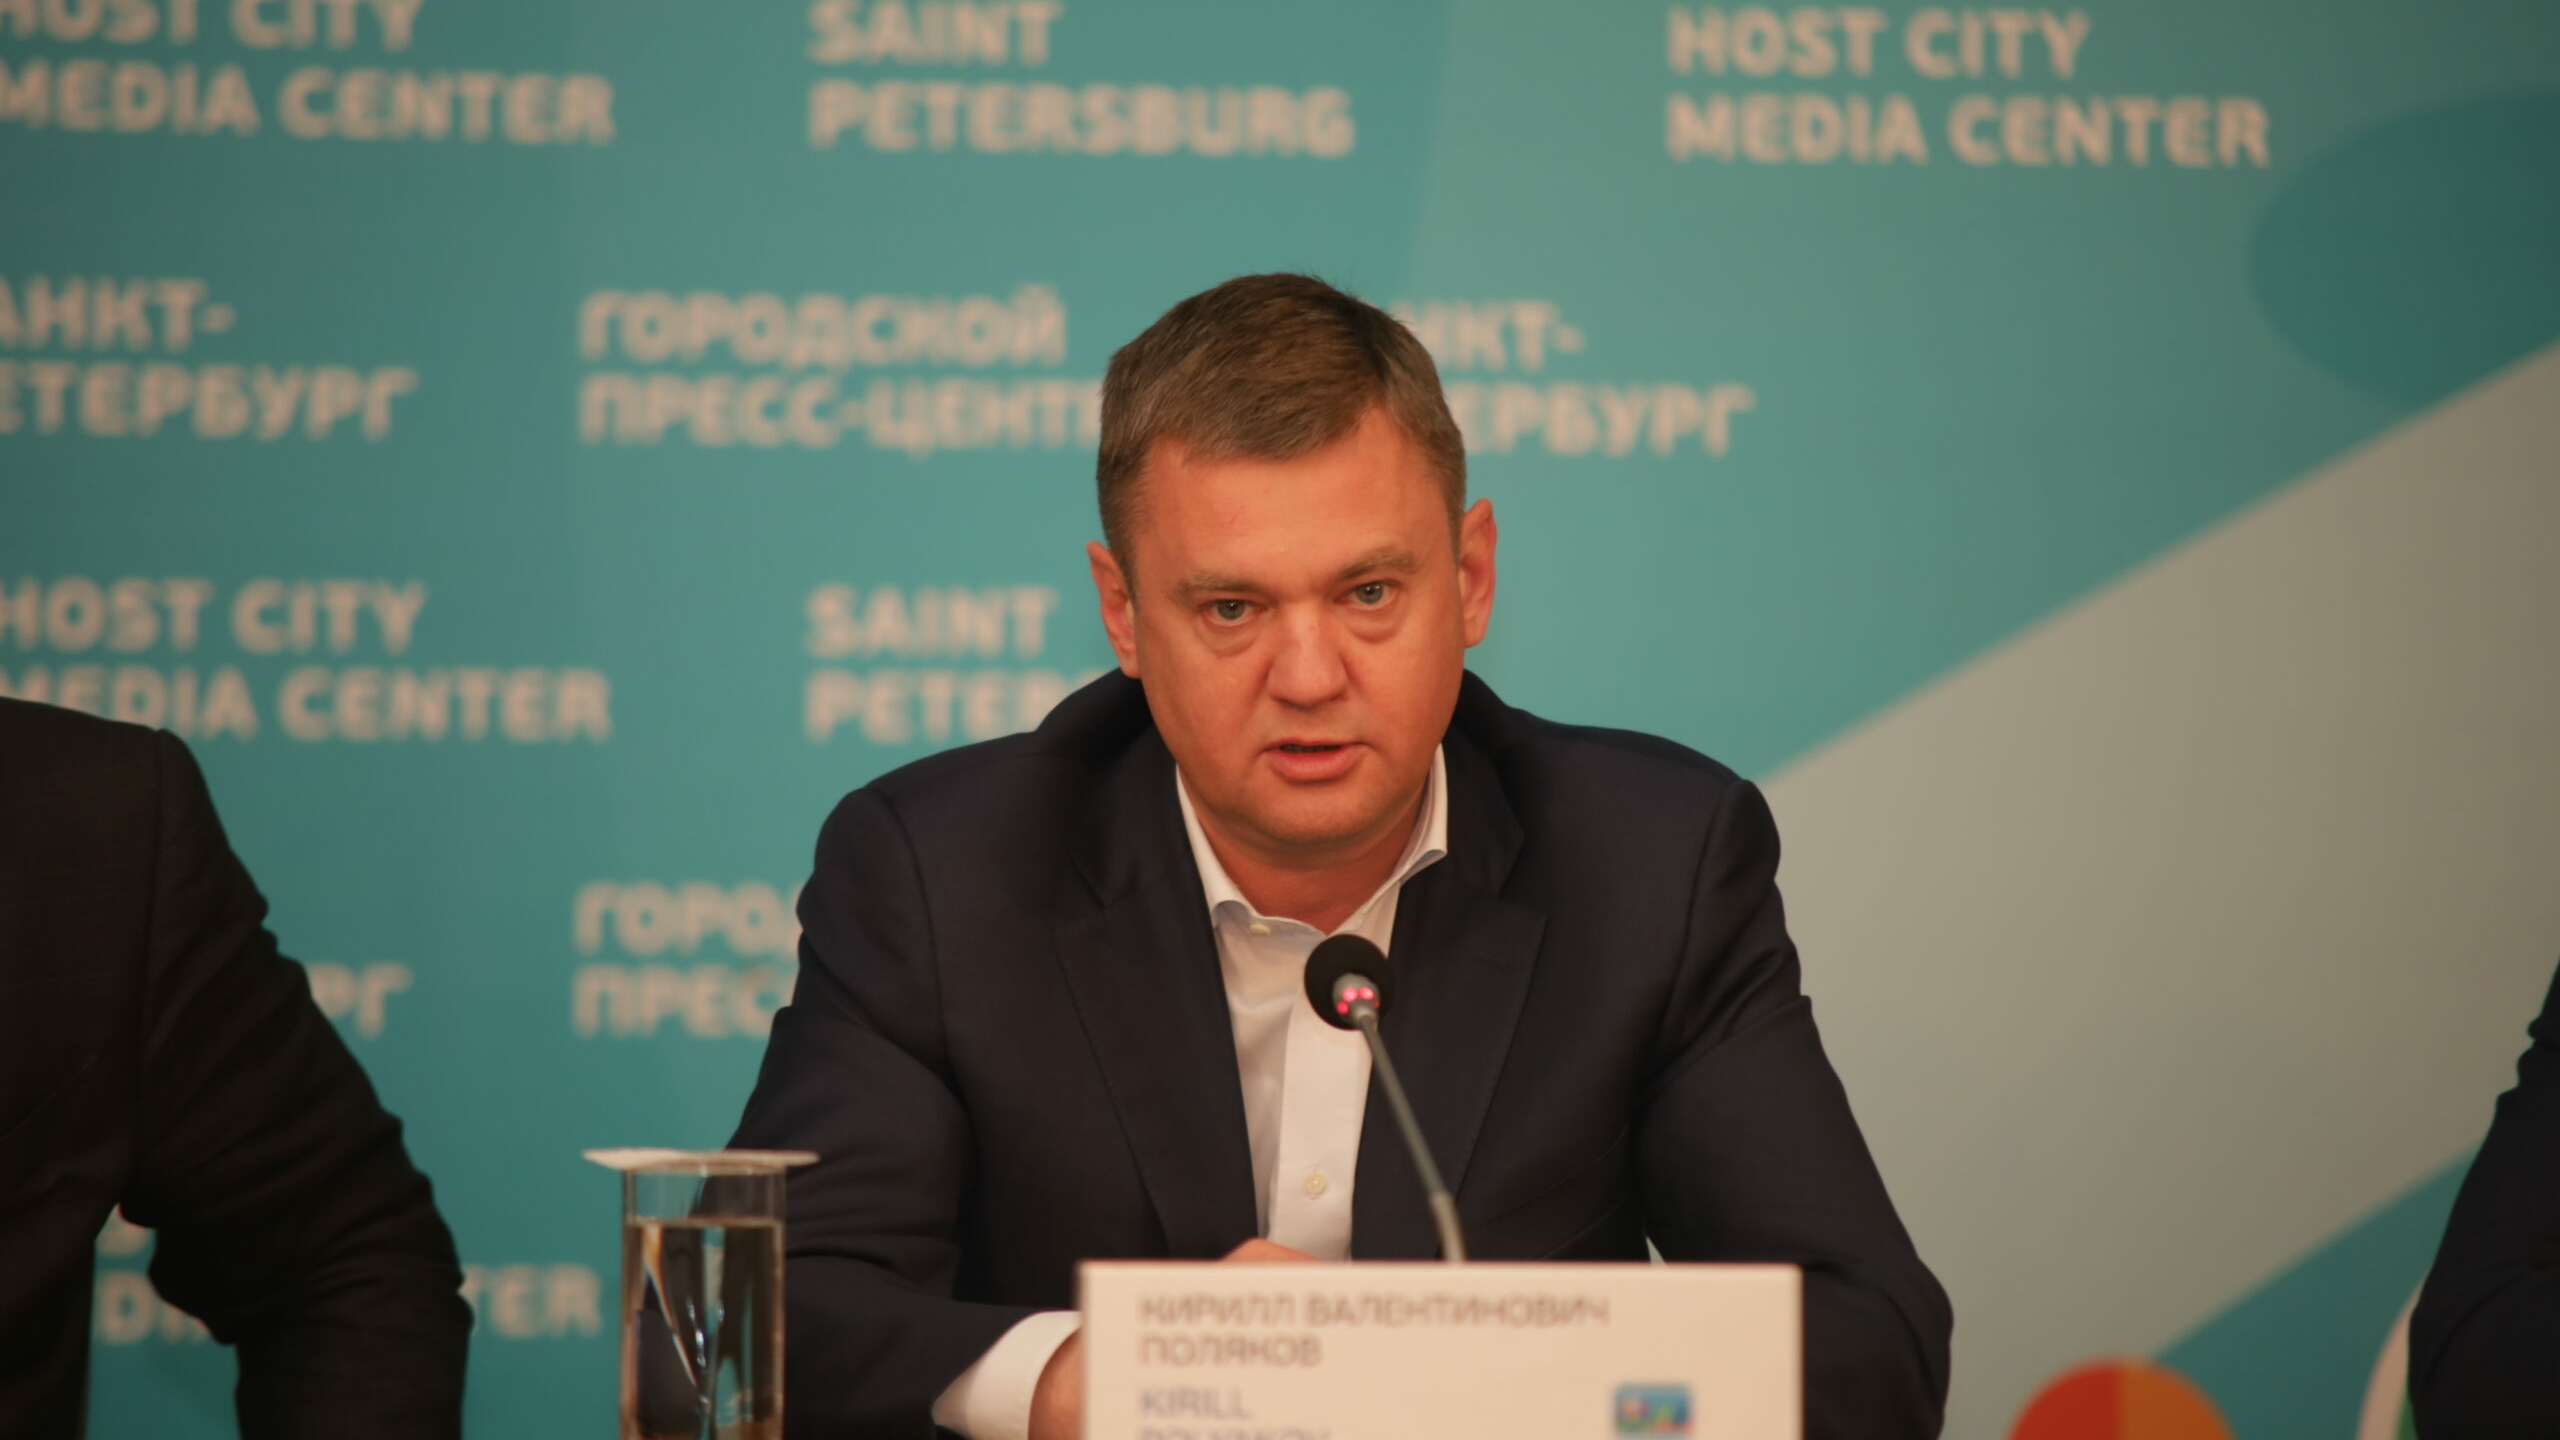 Вице-губернатор Кирилл Поляков: главный эффект платных парковок – спасенные жизни людей